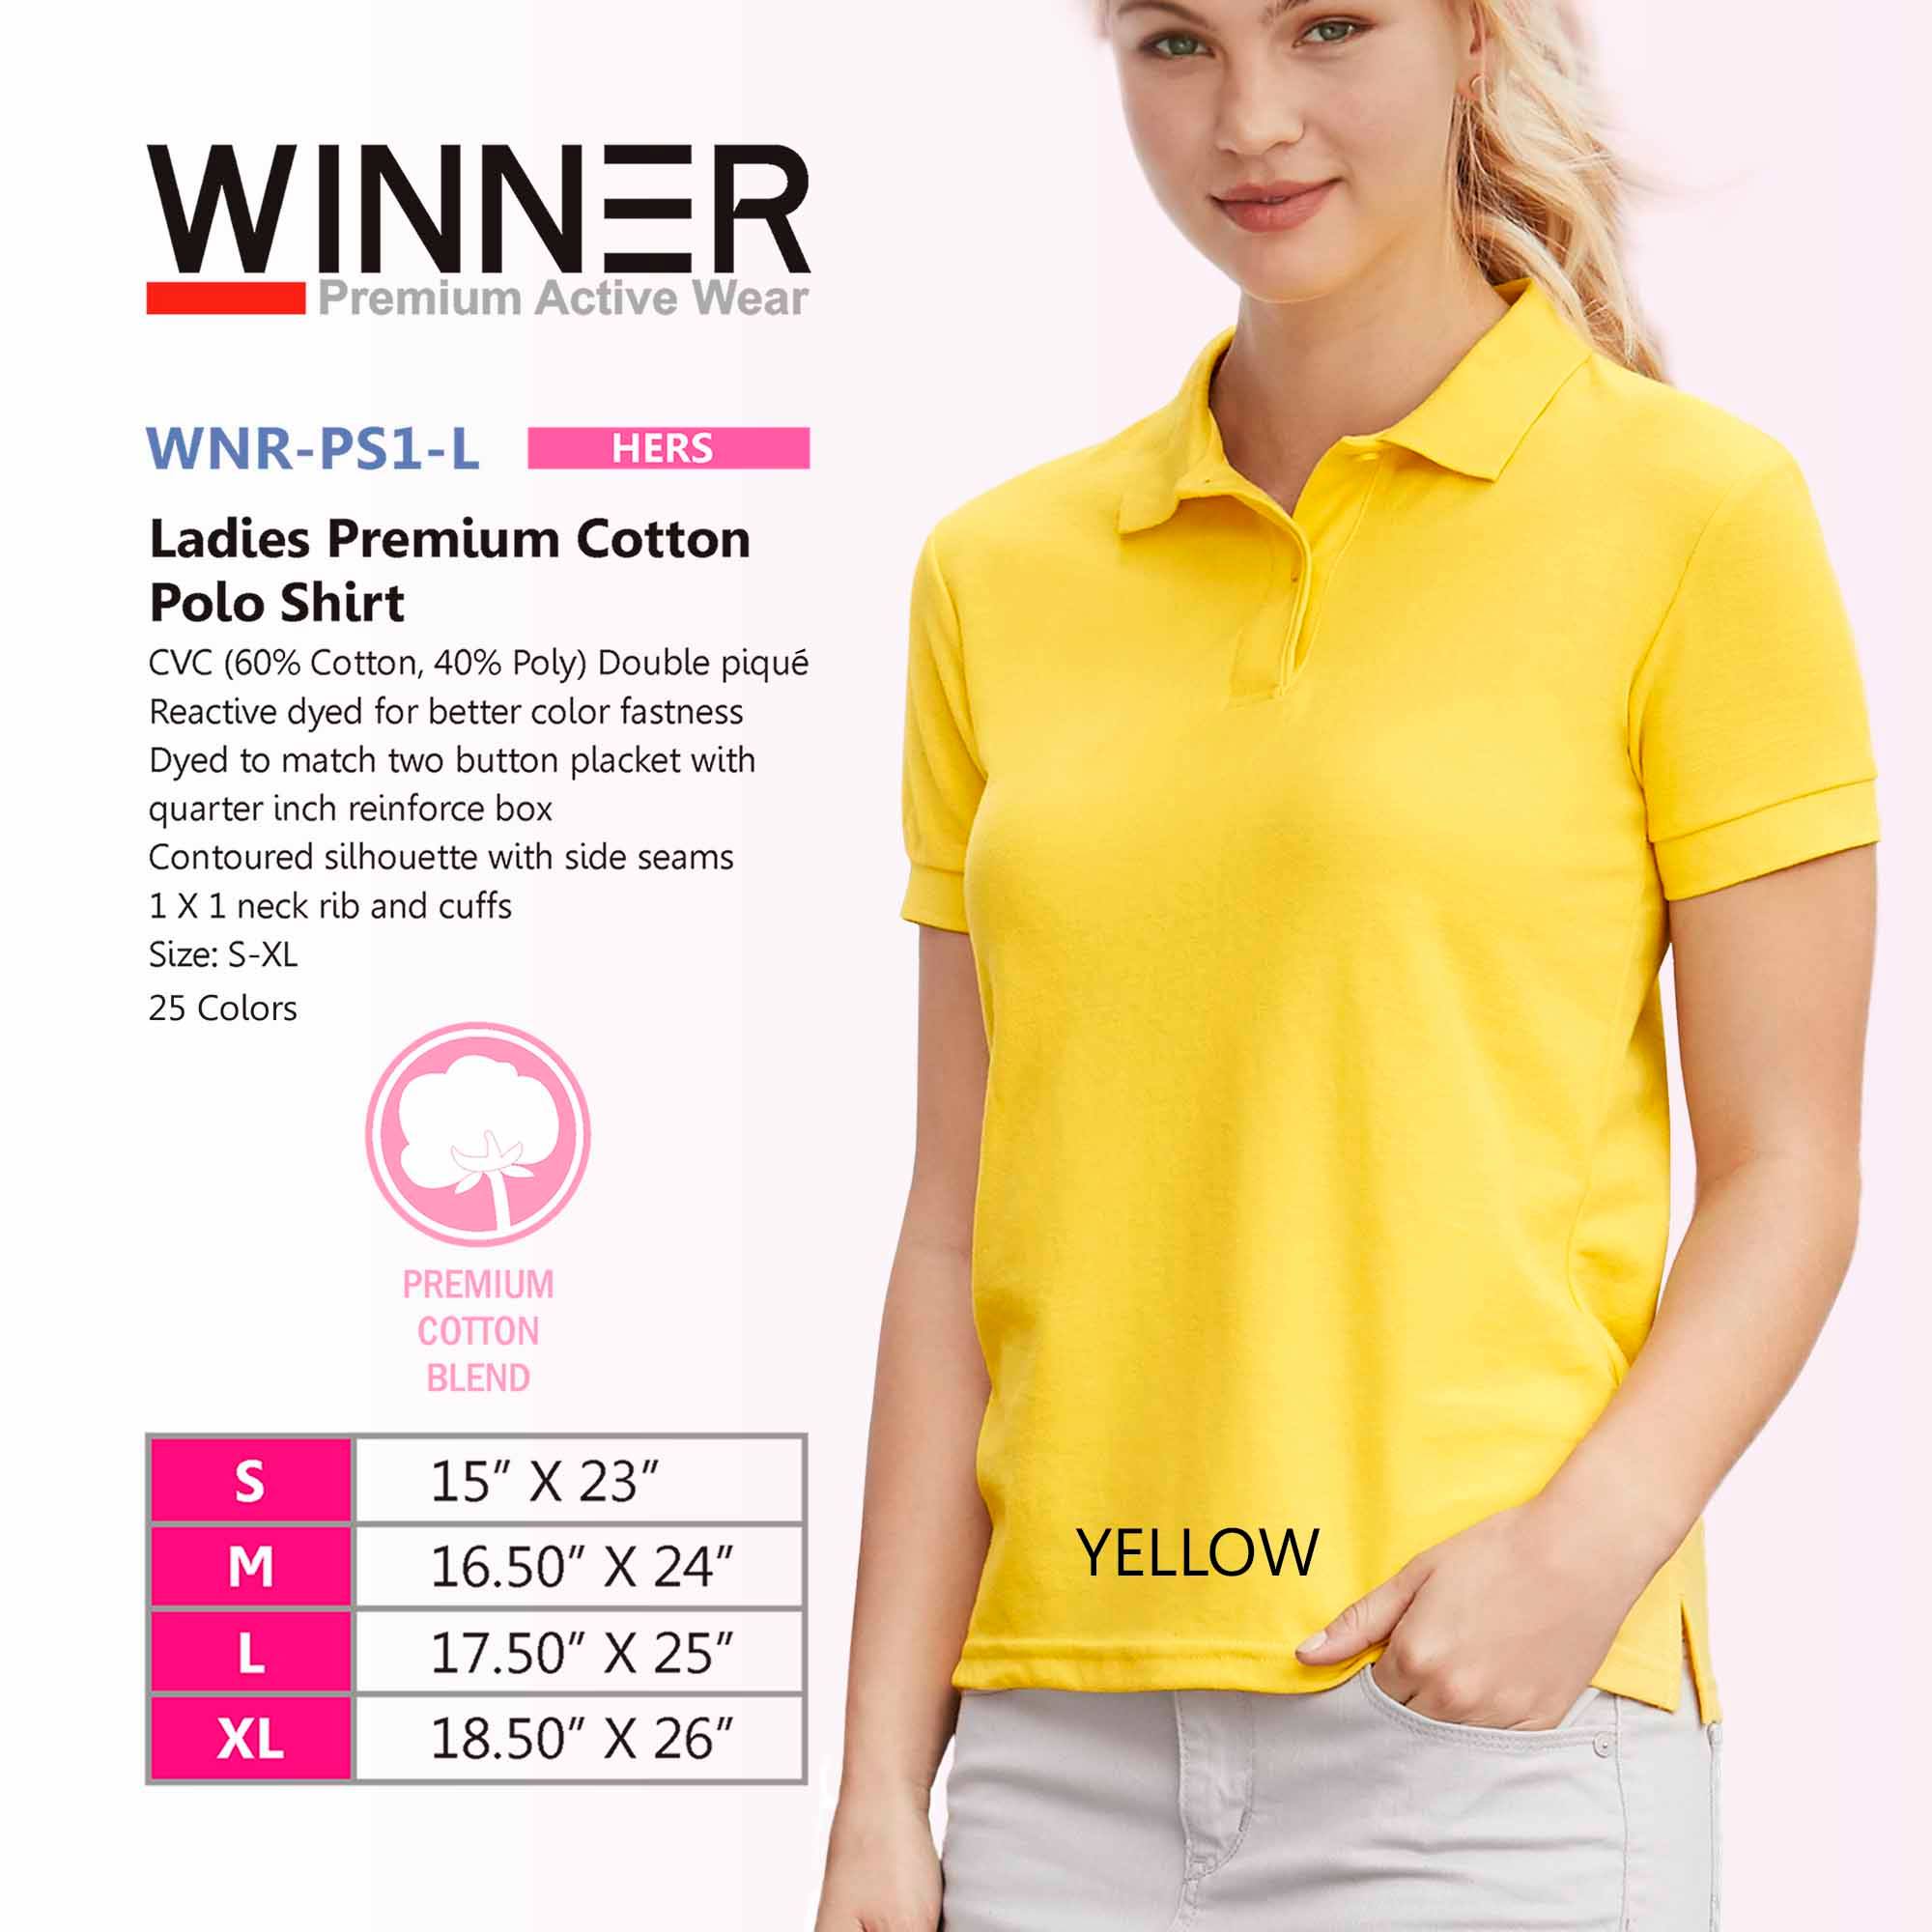 Yellow Polo Shirts for Women #Winner 